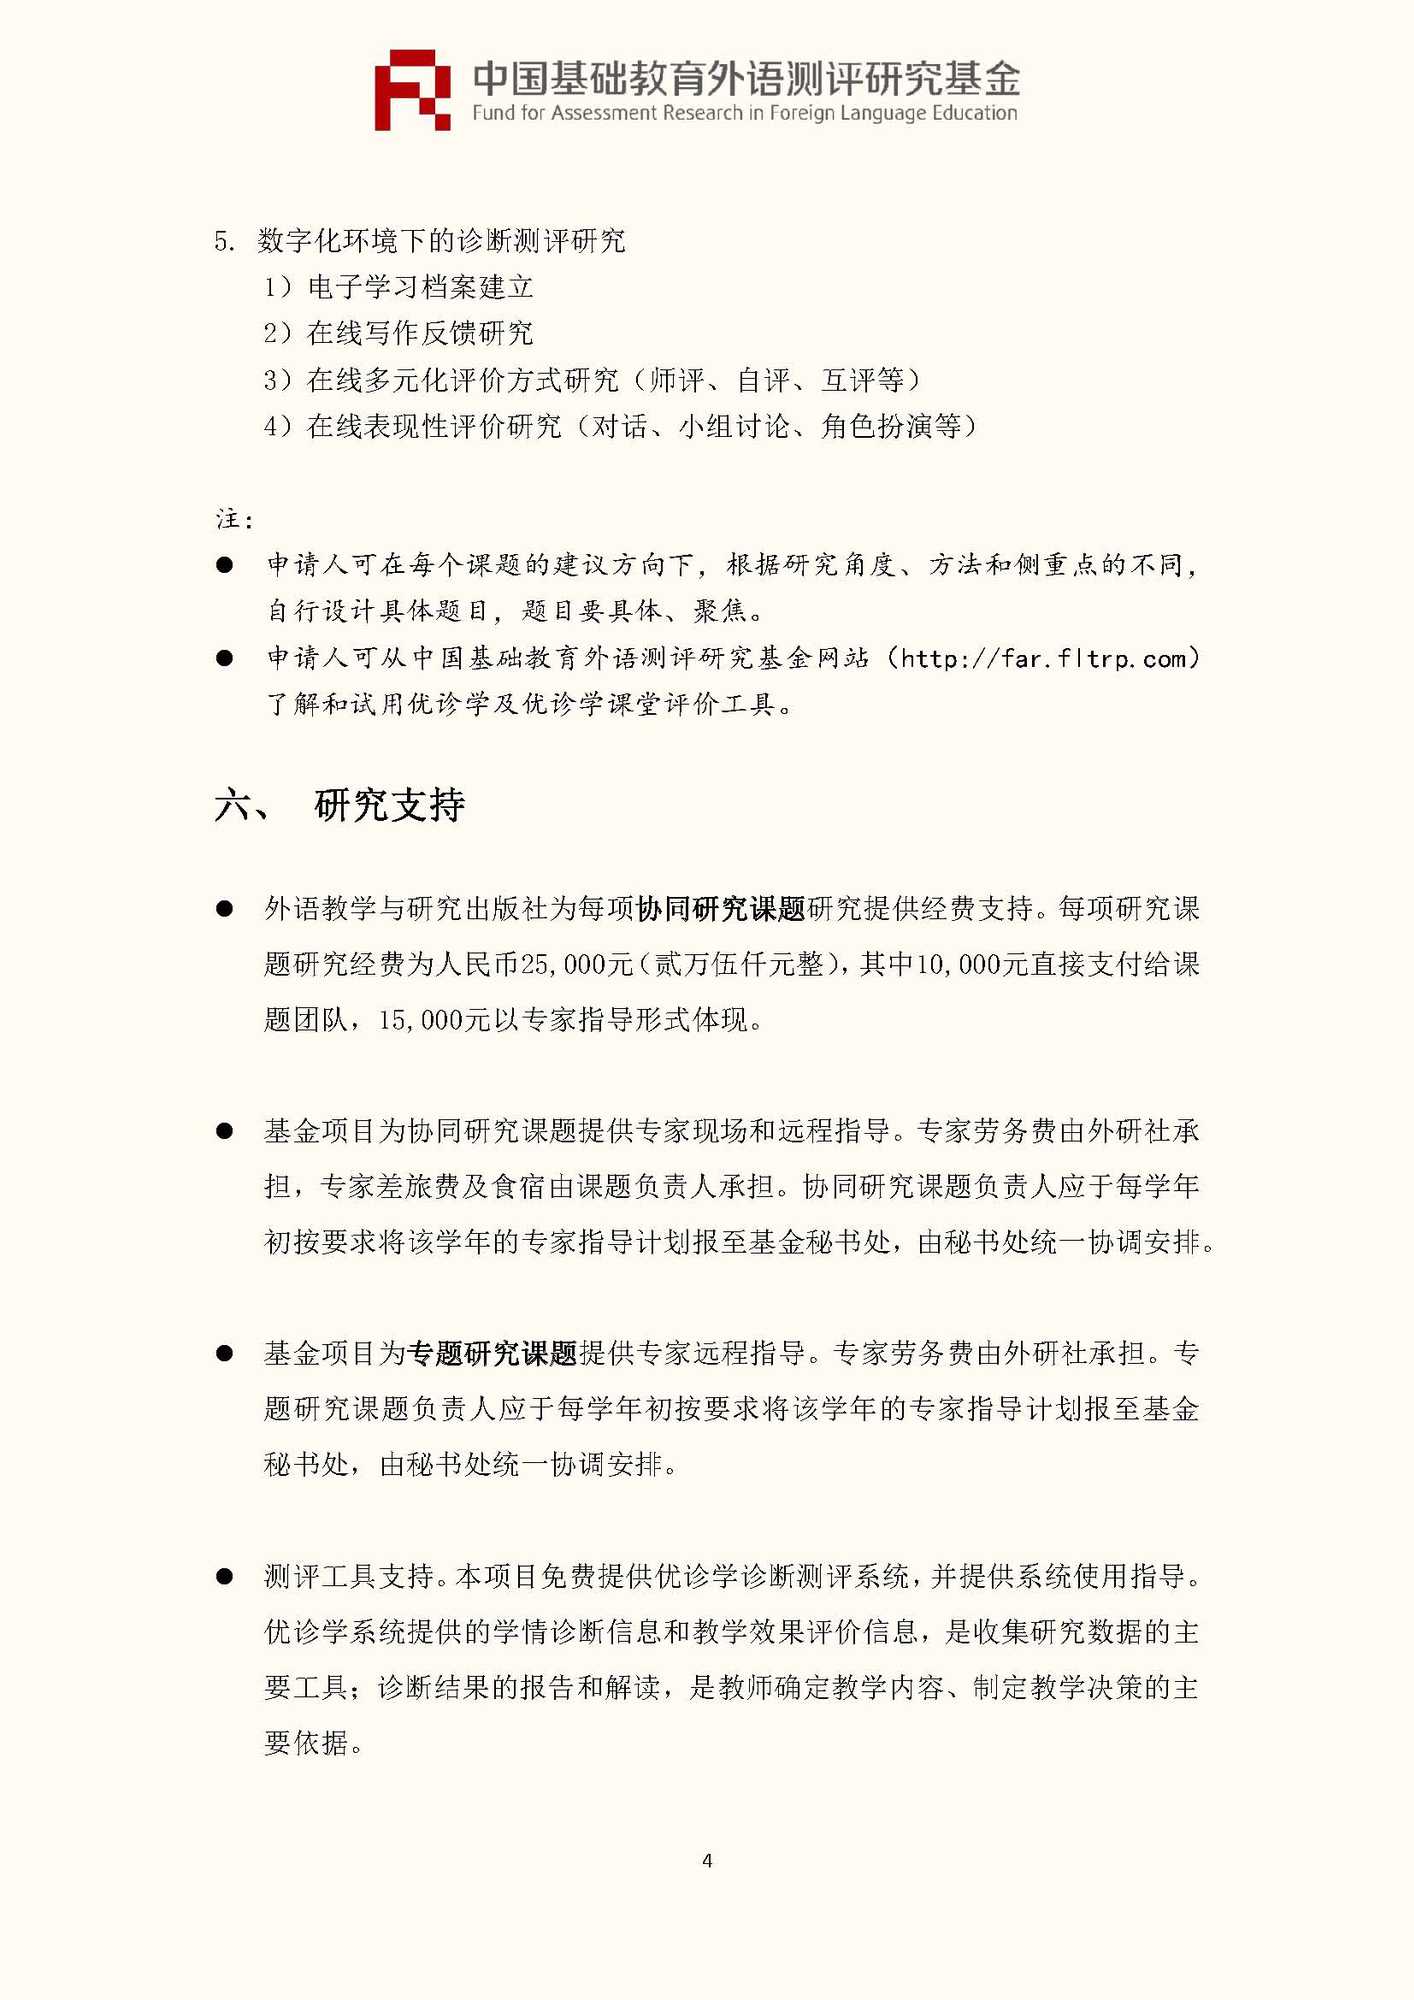 文件1：“中国基础教育外语测评研究基金”第三期课题申报指南_页面_06